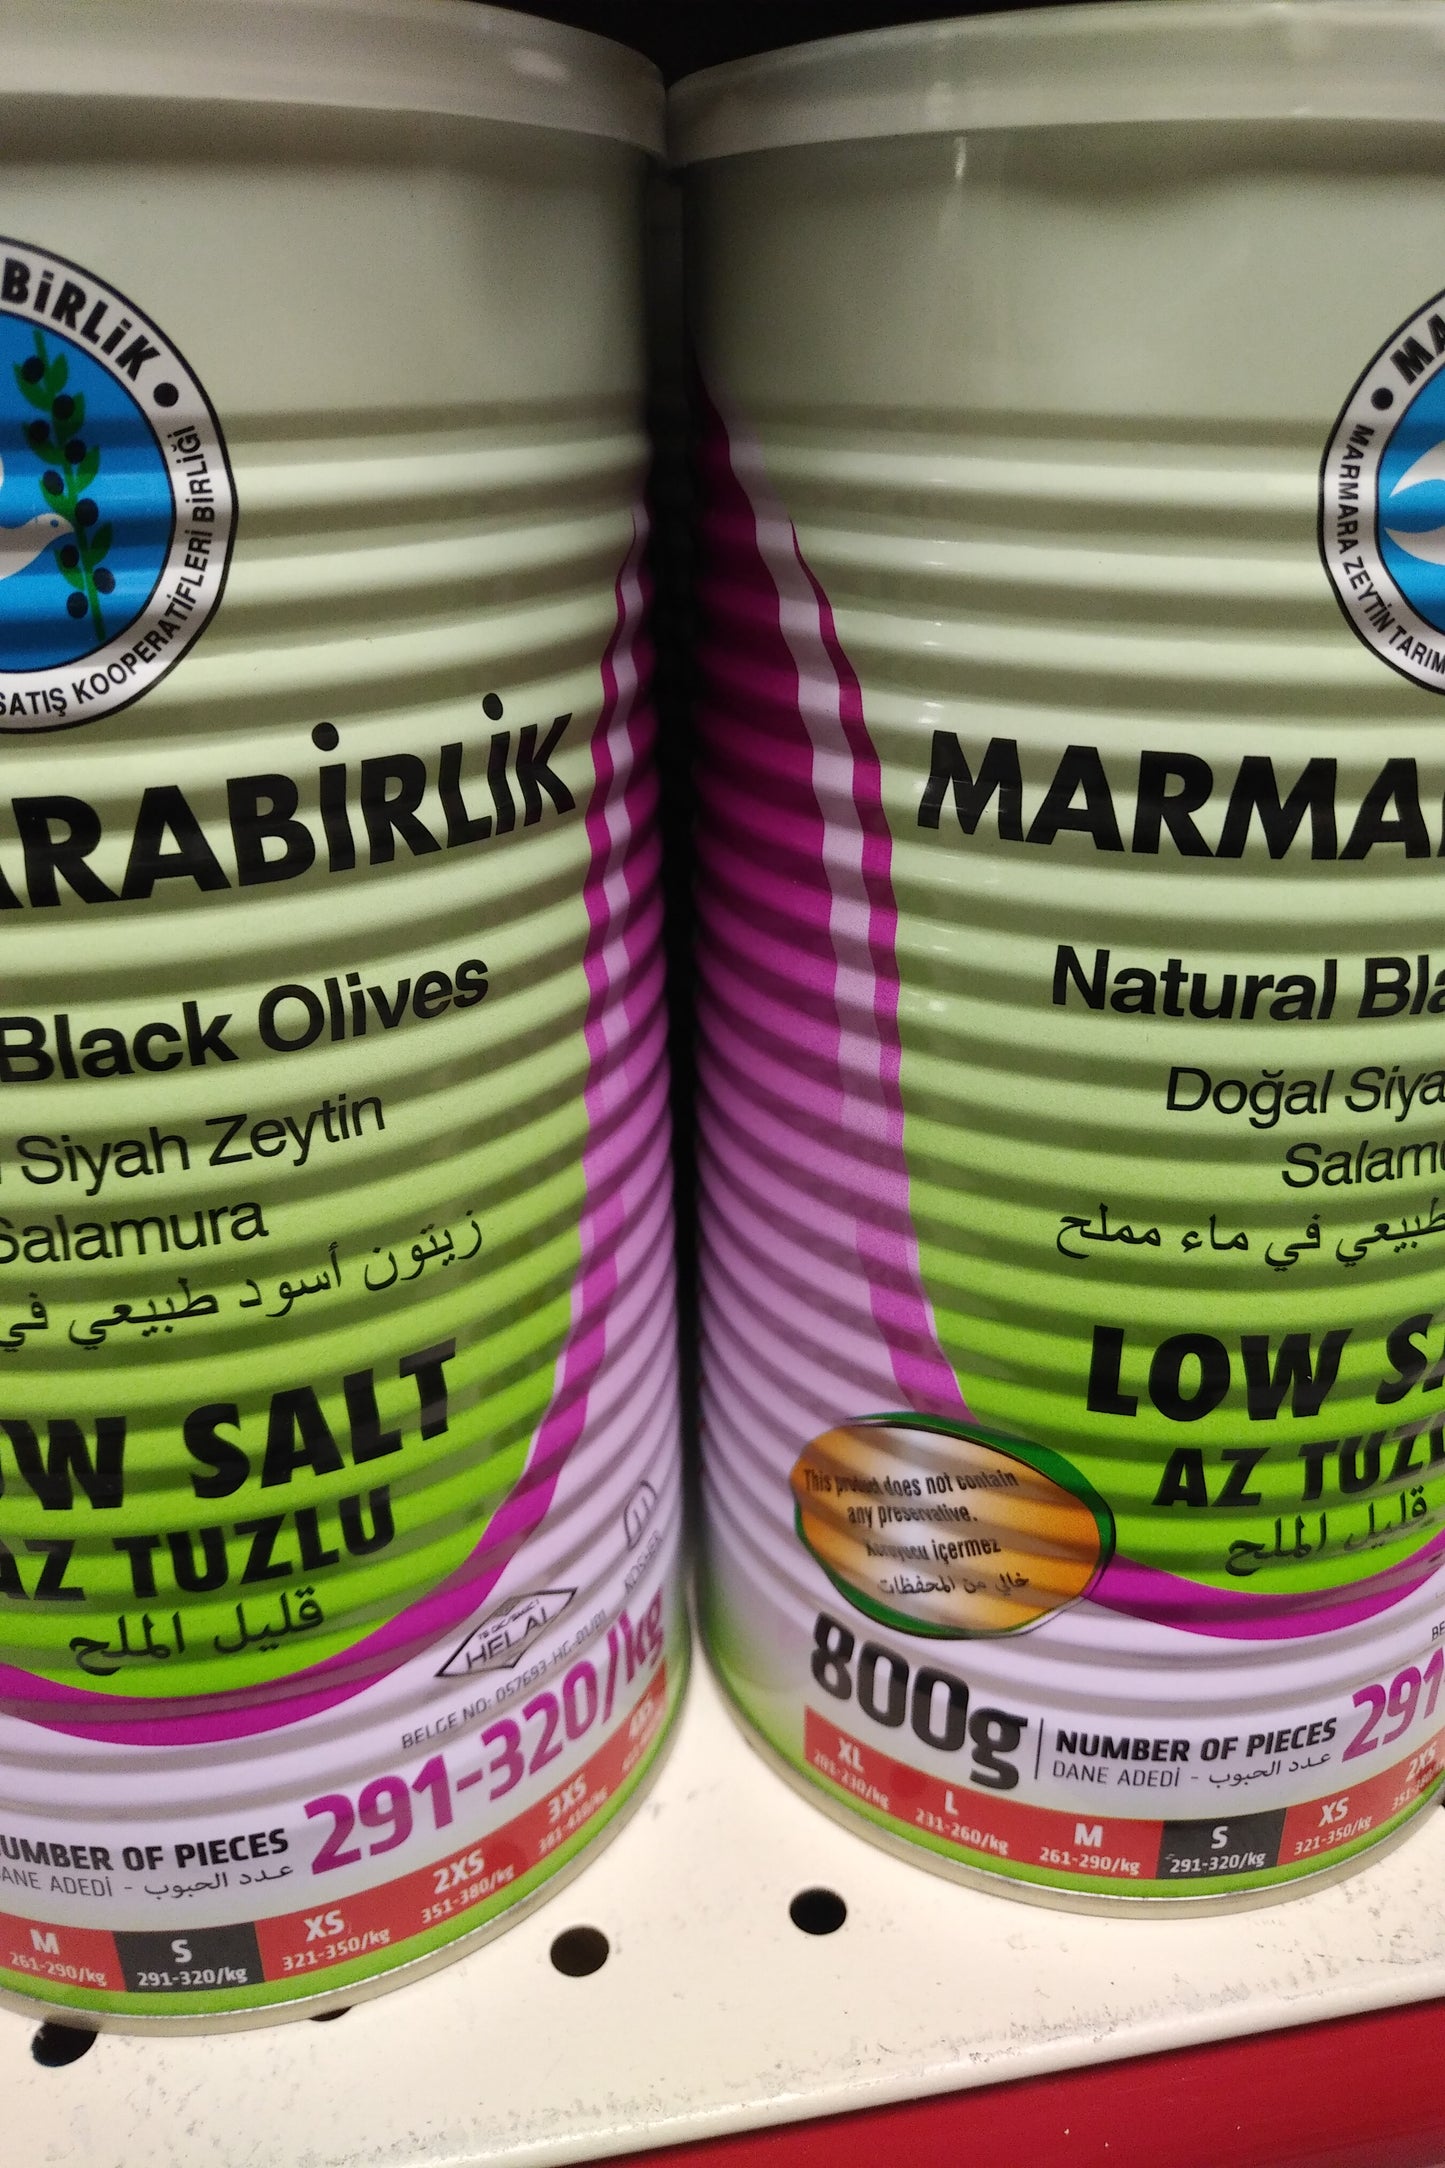 Marmarabirlik Low Salt Black Olives 800gr